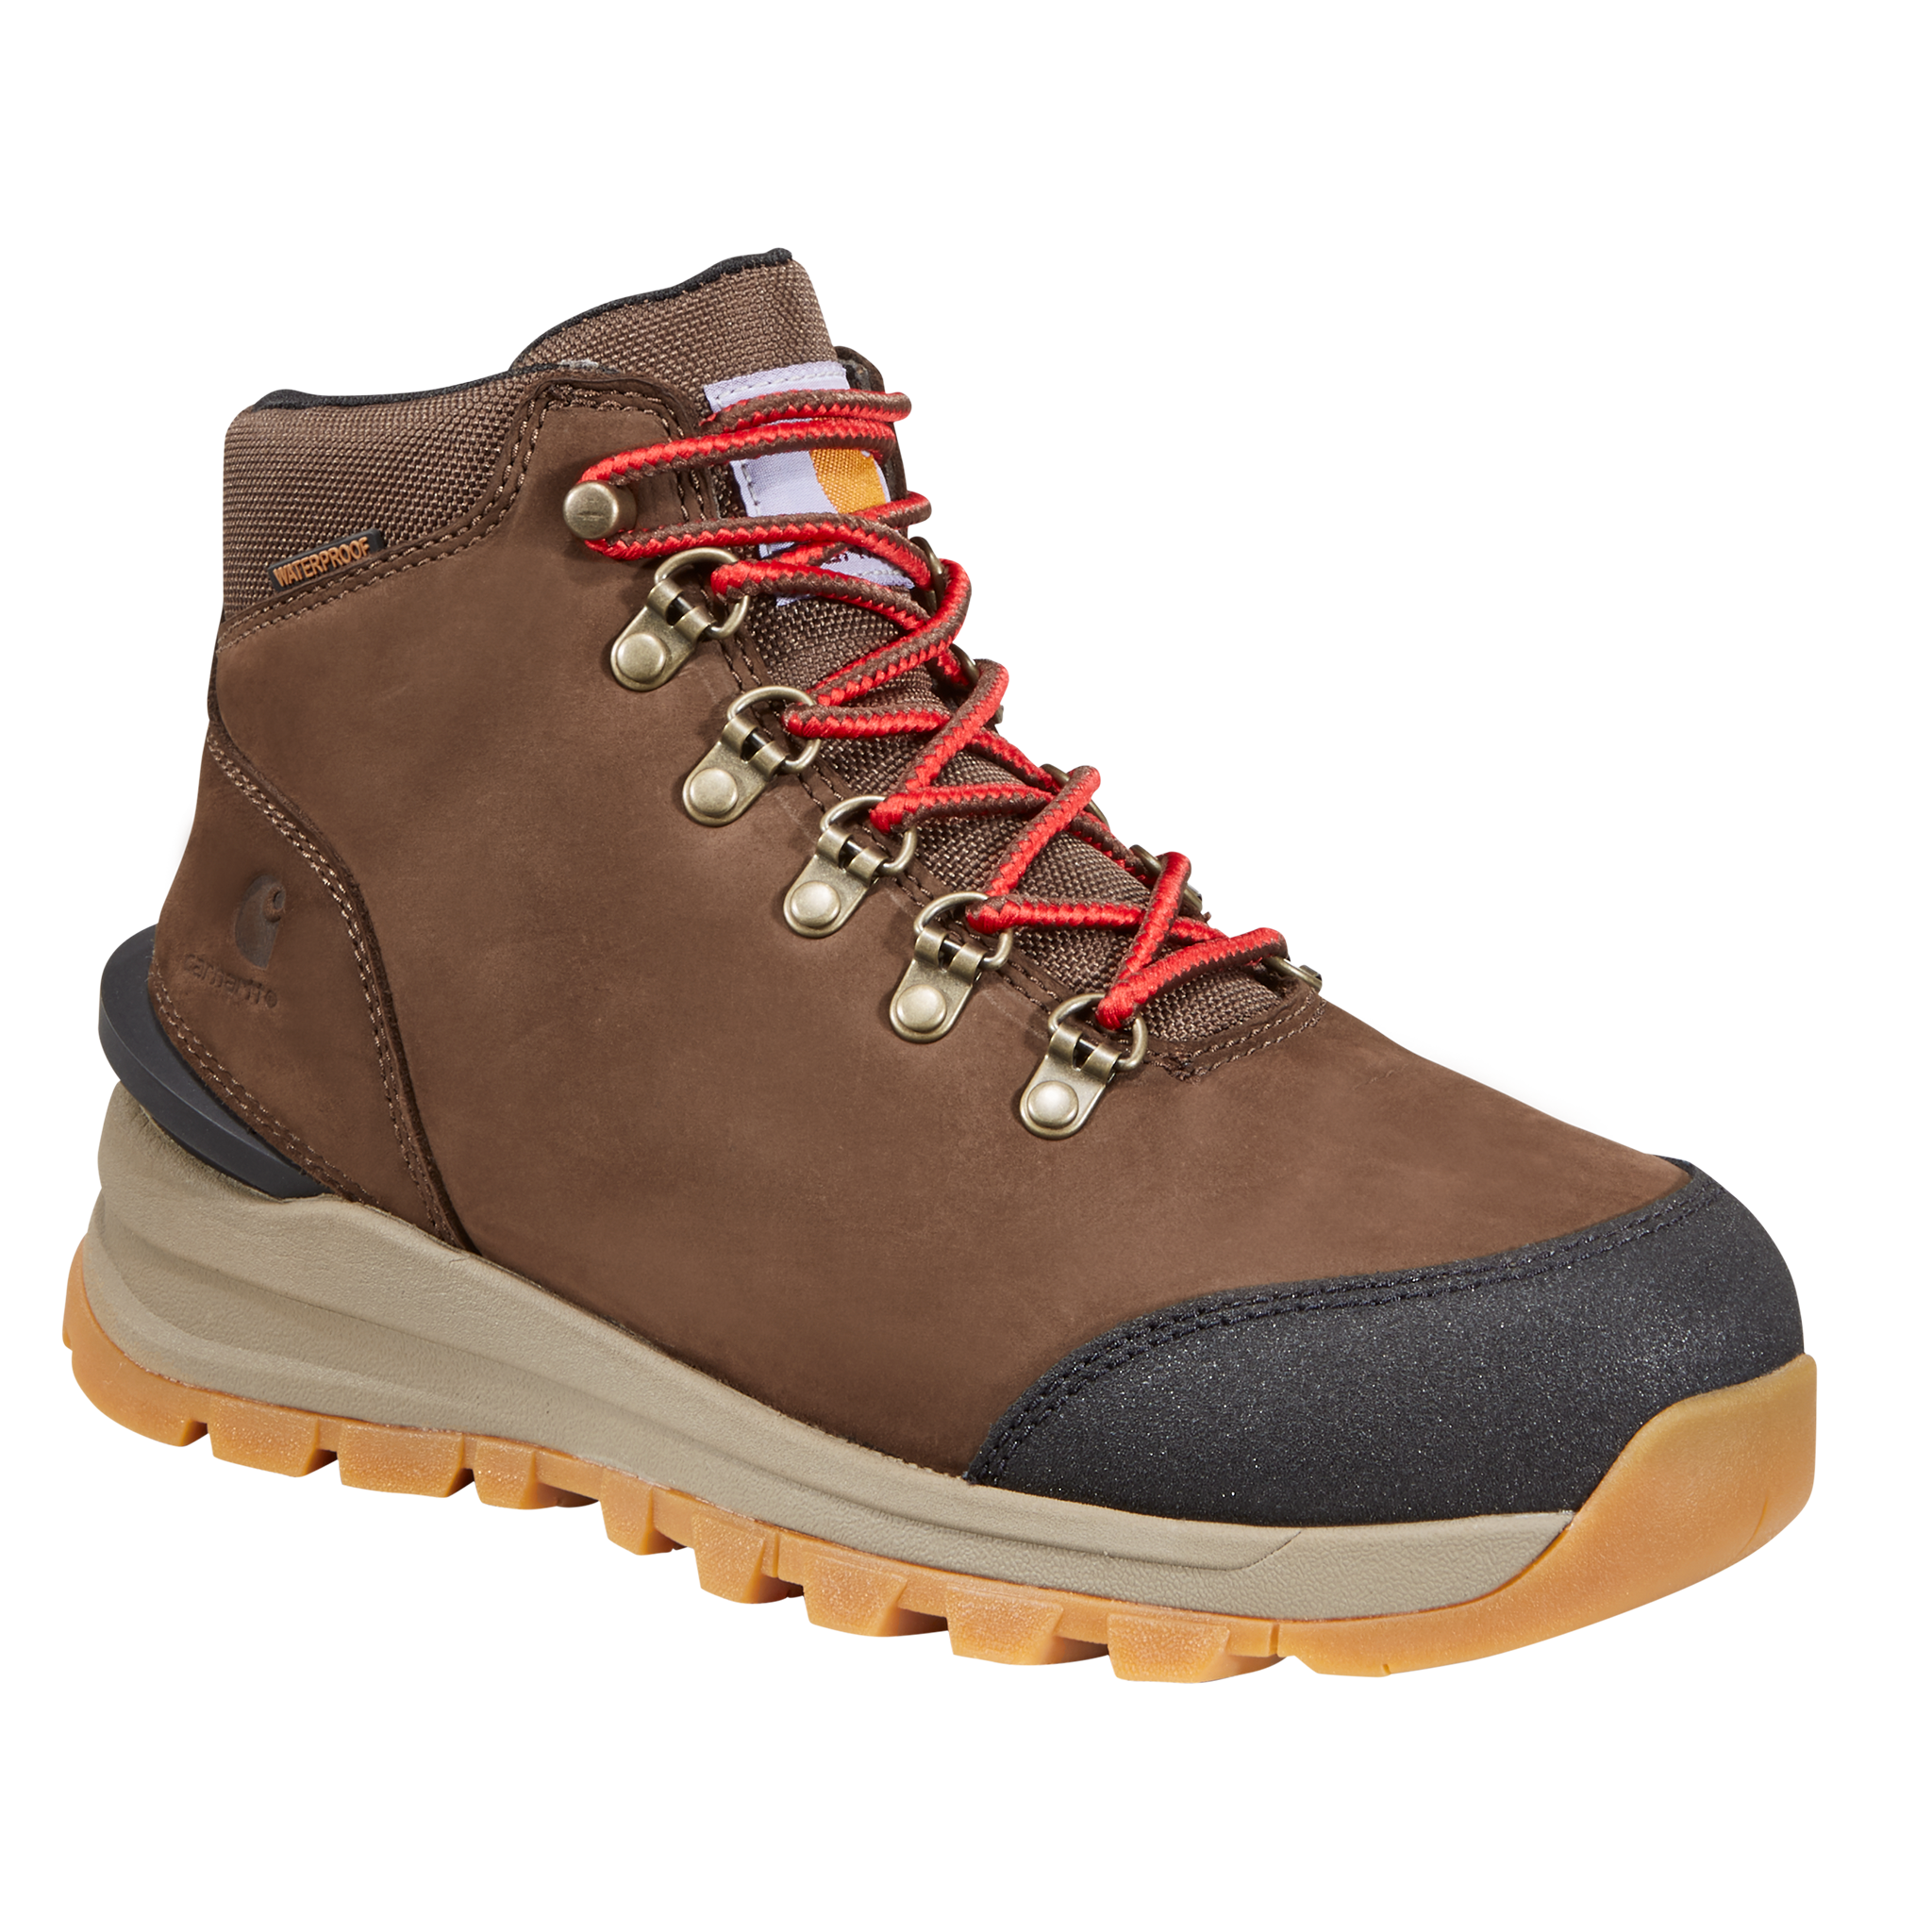 Carhartt Gilmore Waterproof Hiking Boots for Ladies - Dark Brown Nubuck - 6M